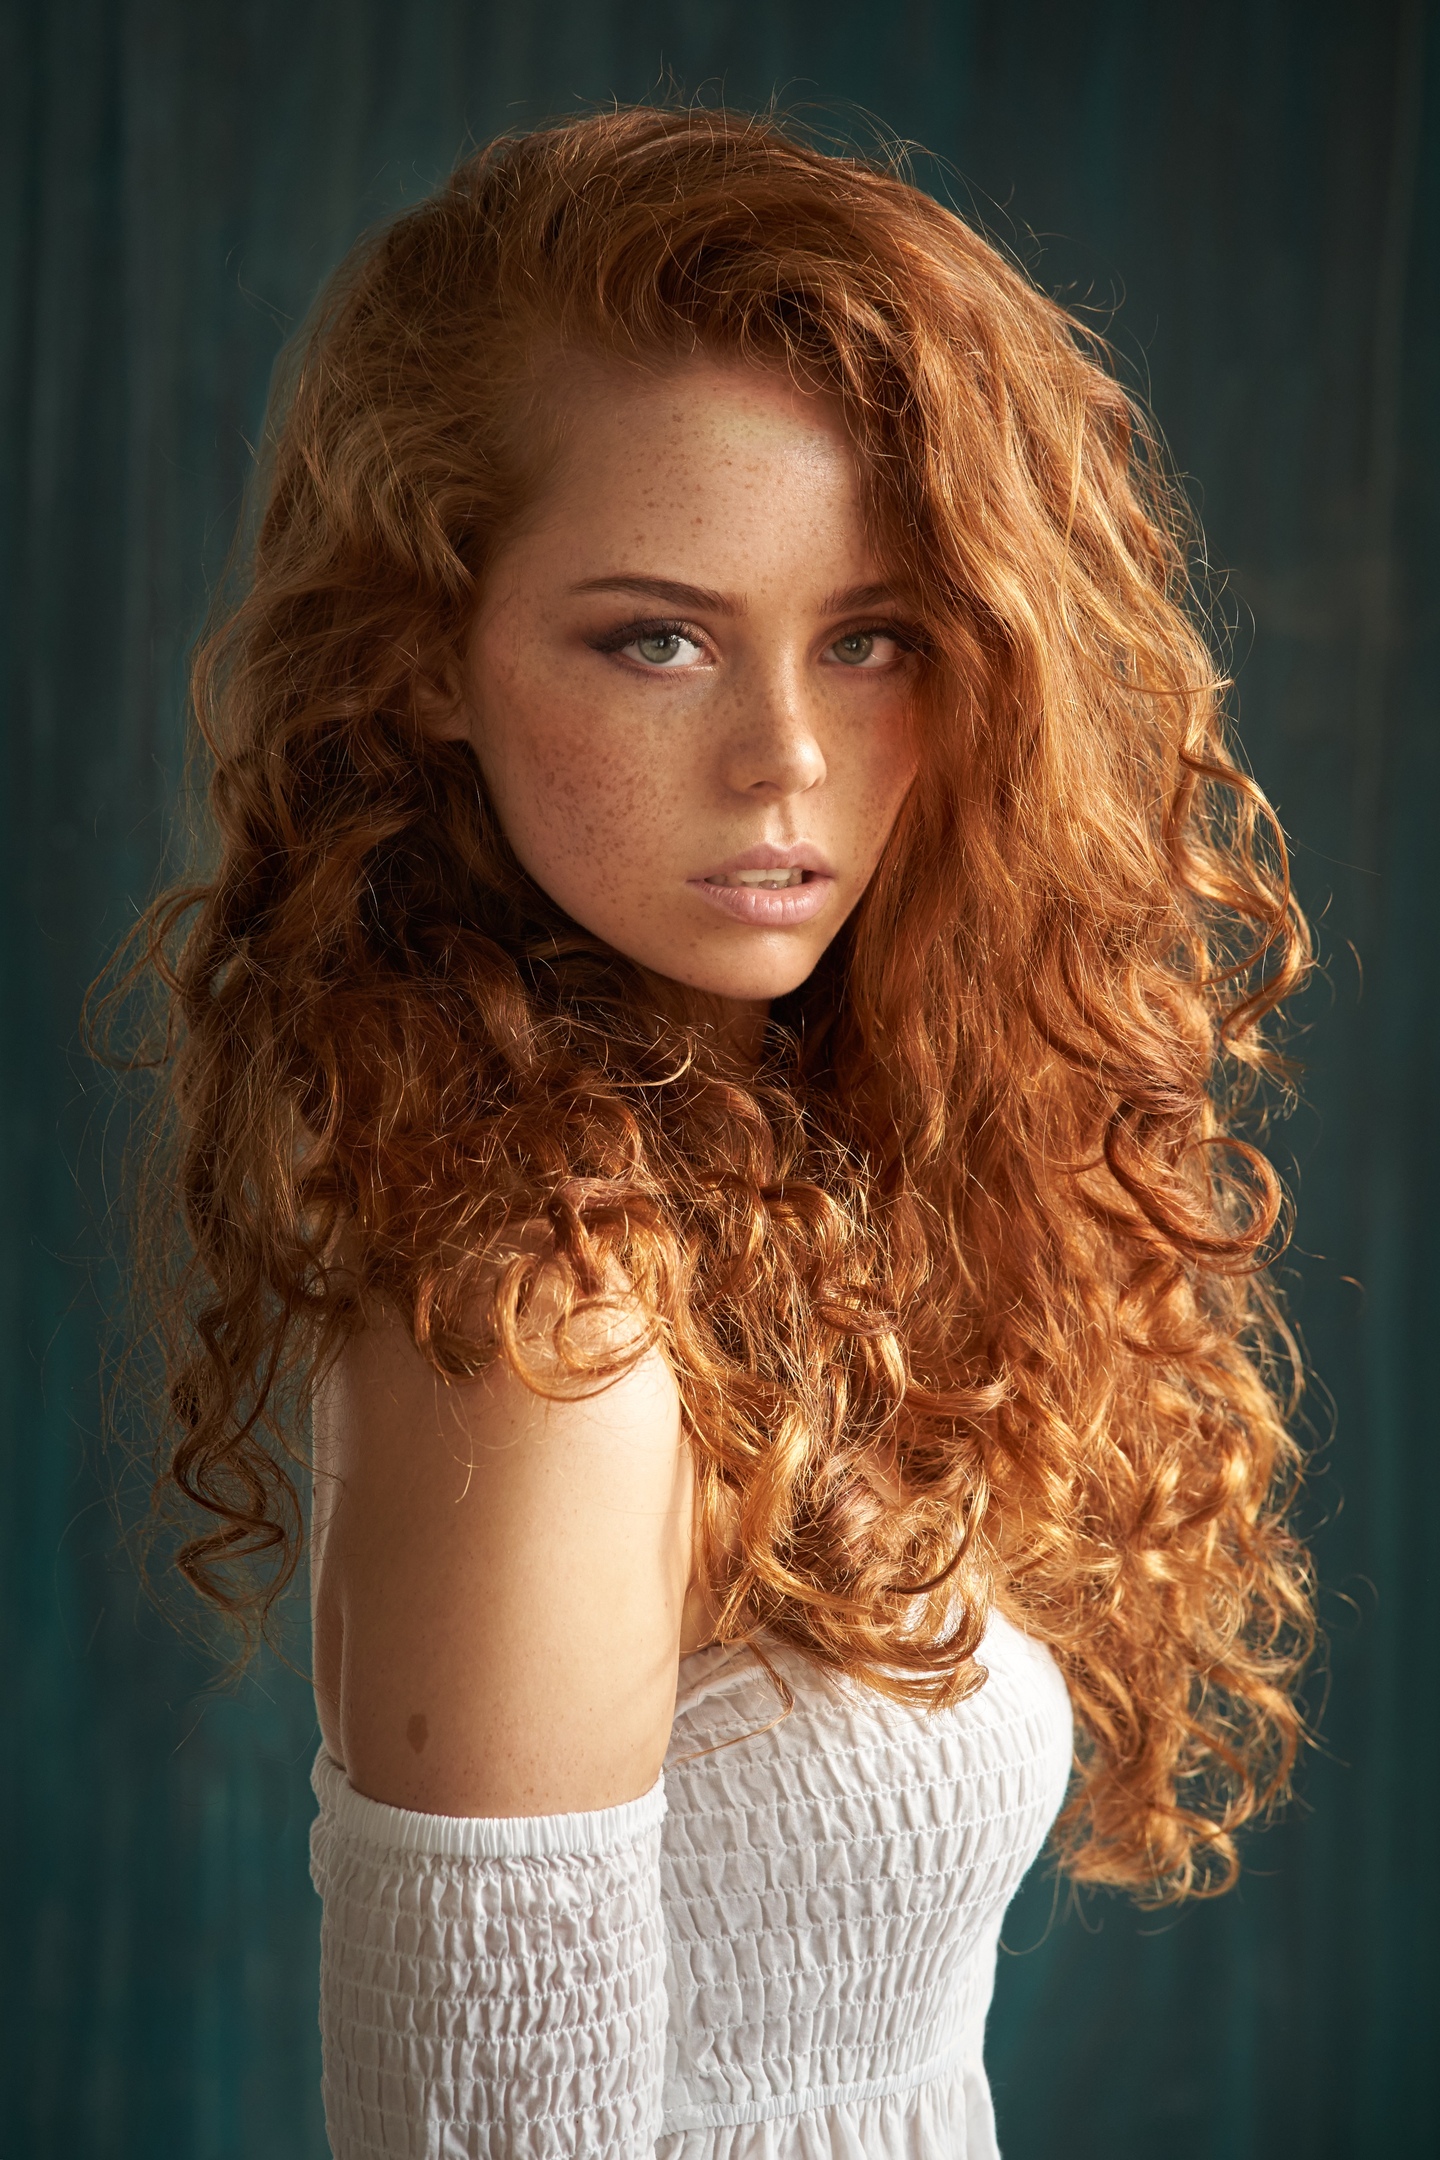 Long Hair Freckles Brunette Tanned Curly Hair Model Women 1440x2160